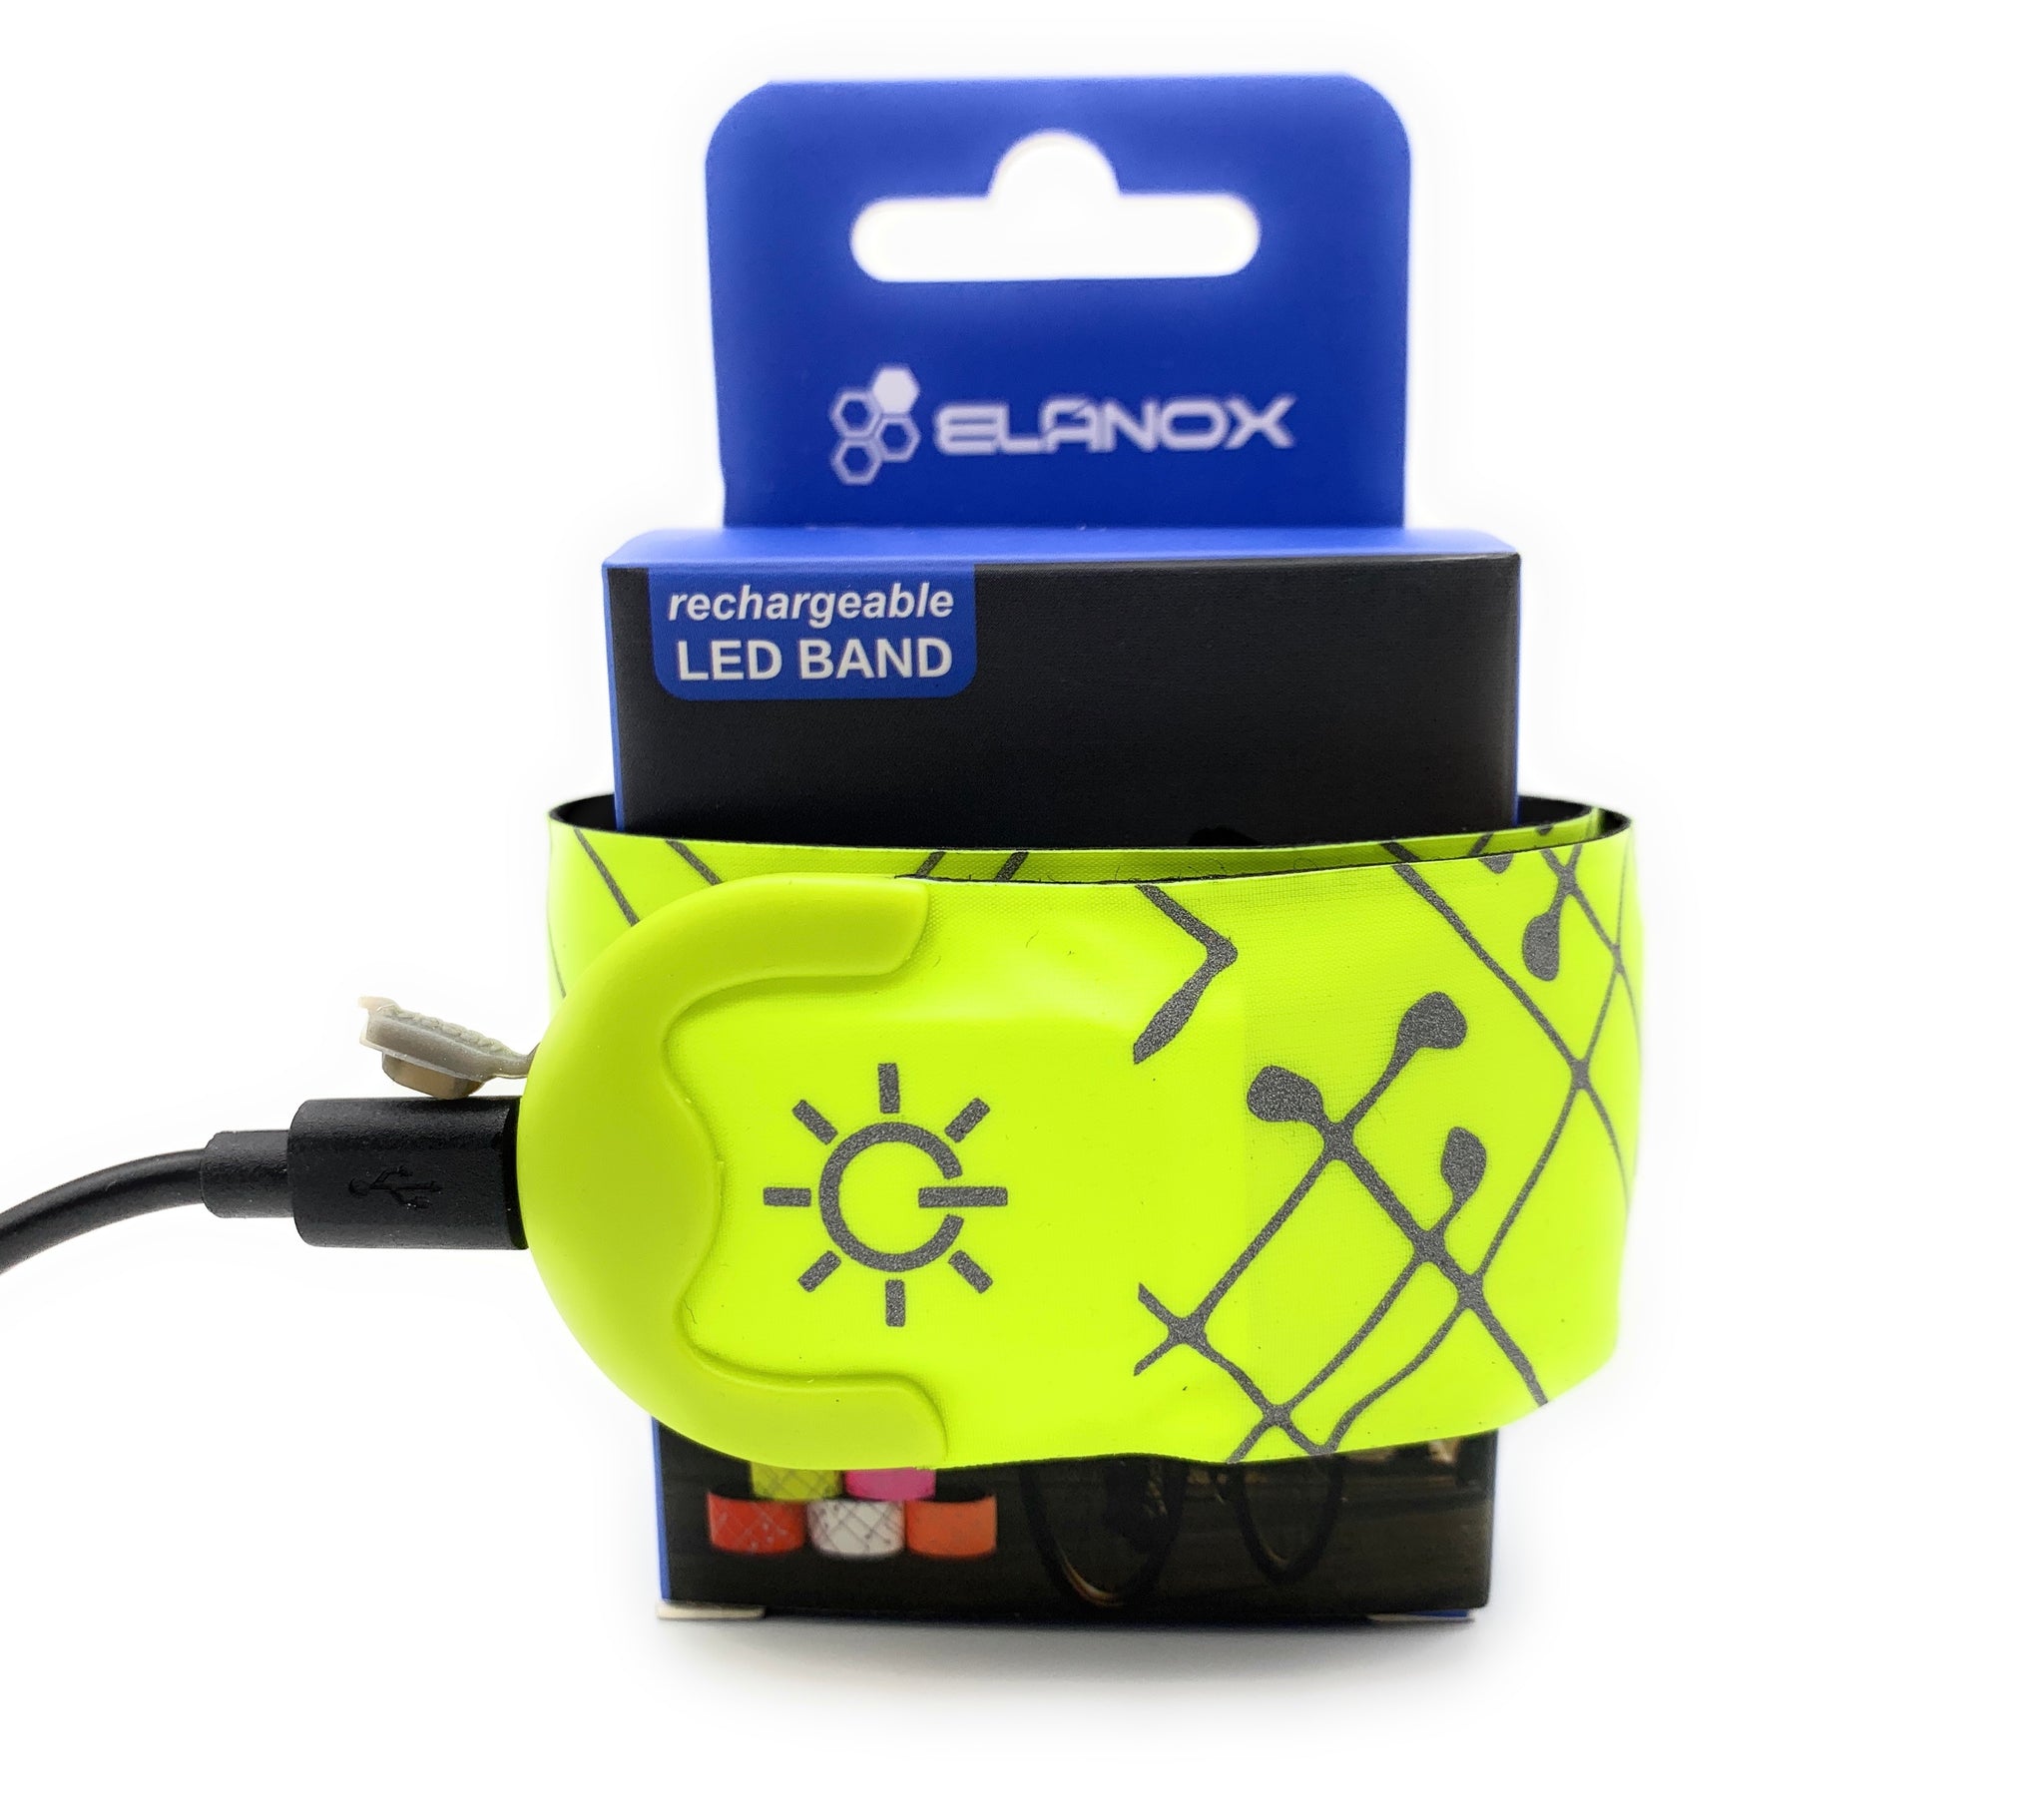 USB wiederaufladbar LED Slap Band Sicherheitslicht / 1 St. grün - elanox